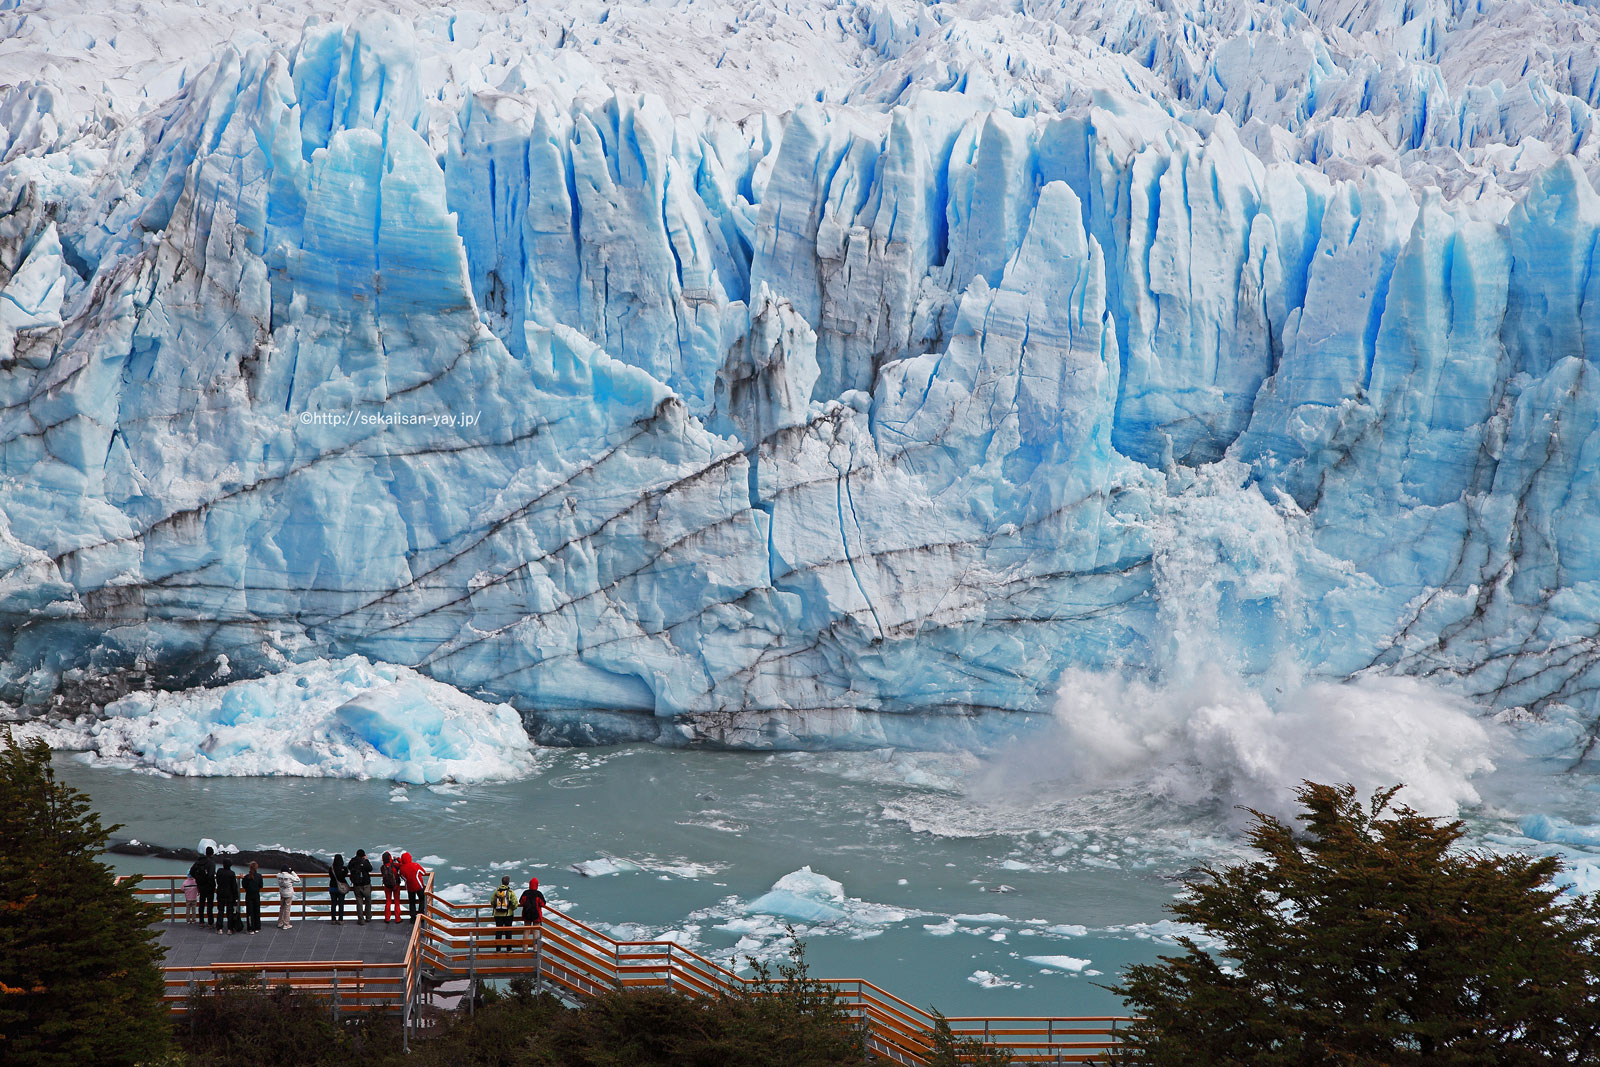 アルゼンチン「ロス・グラシアレス」-ペリト・モレノ氷河崩落